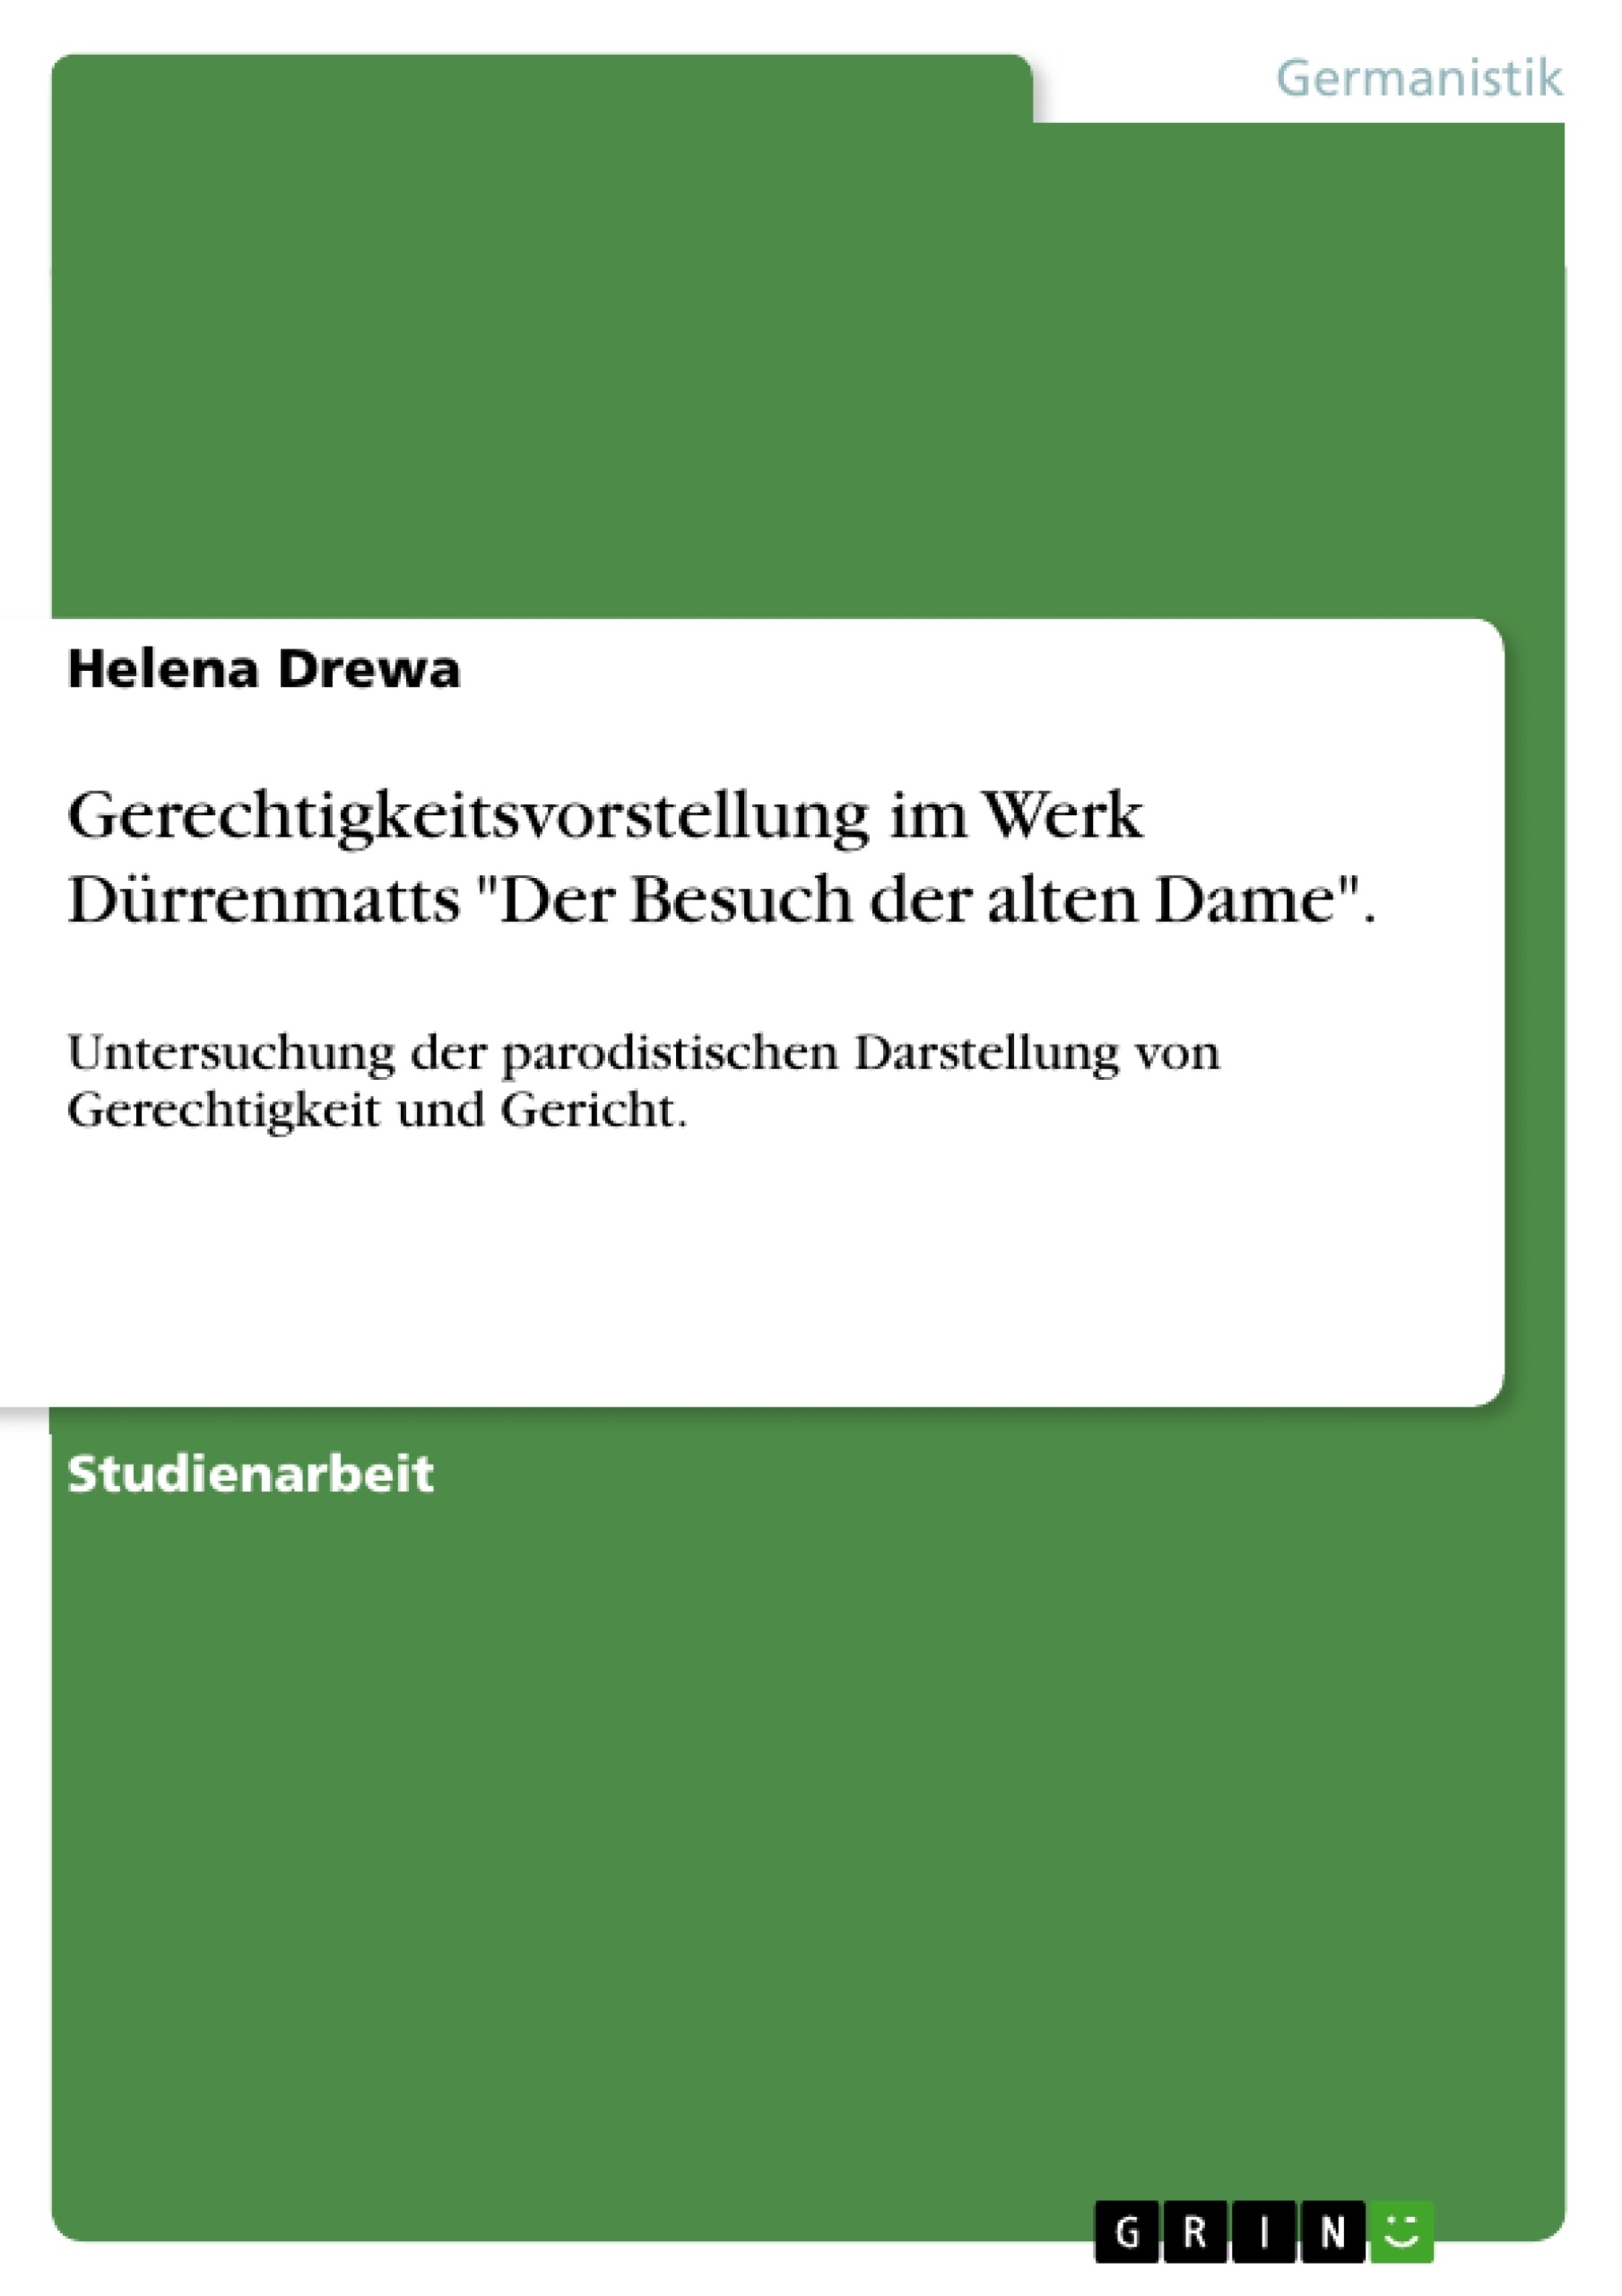 Título: Gerechtigkeitsvorstellung im Werk Dürrenmatts "Der Besuch der alten Dame".